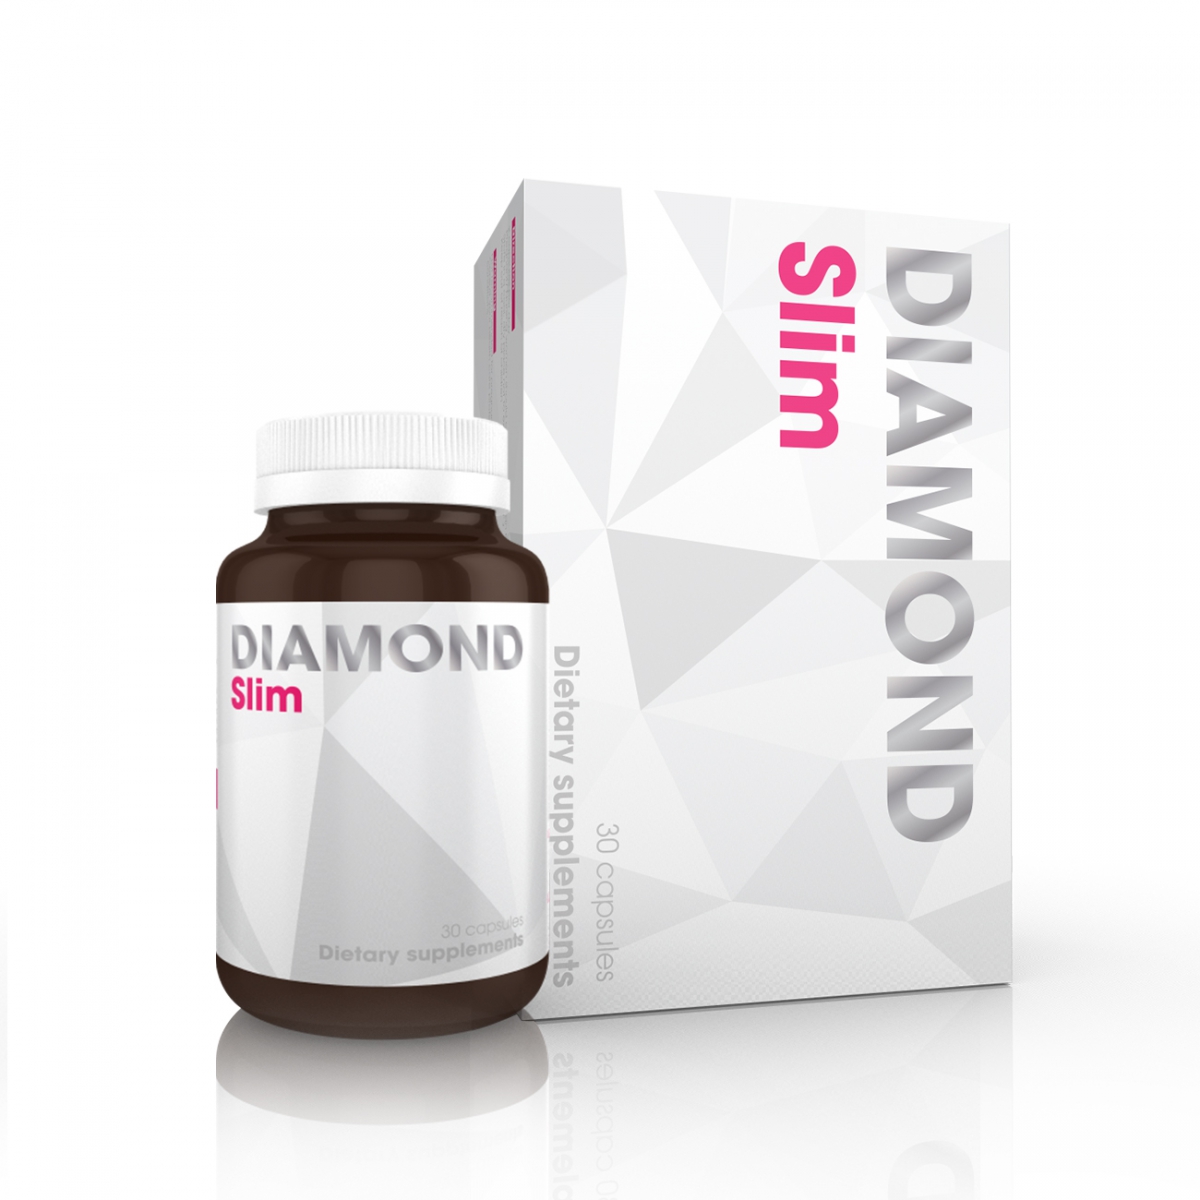 Giảm cân Diamond Slim được bán với giá niêm yết là 700.000đ/hộp 30 viên